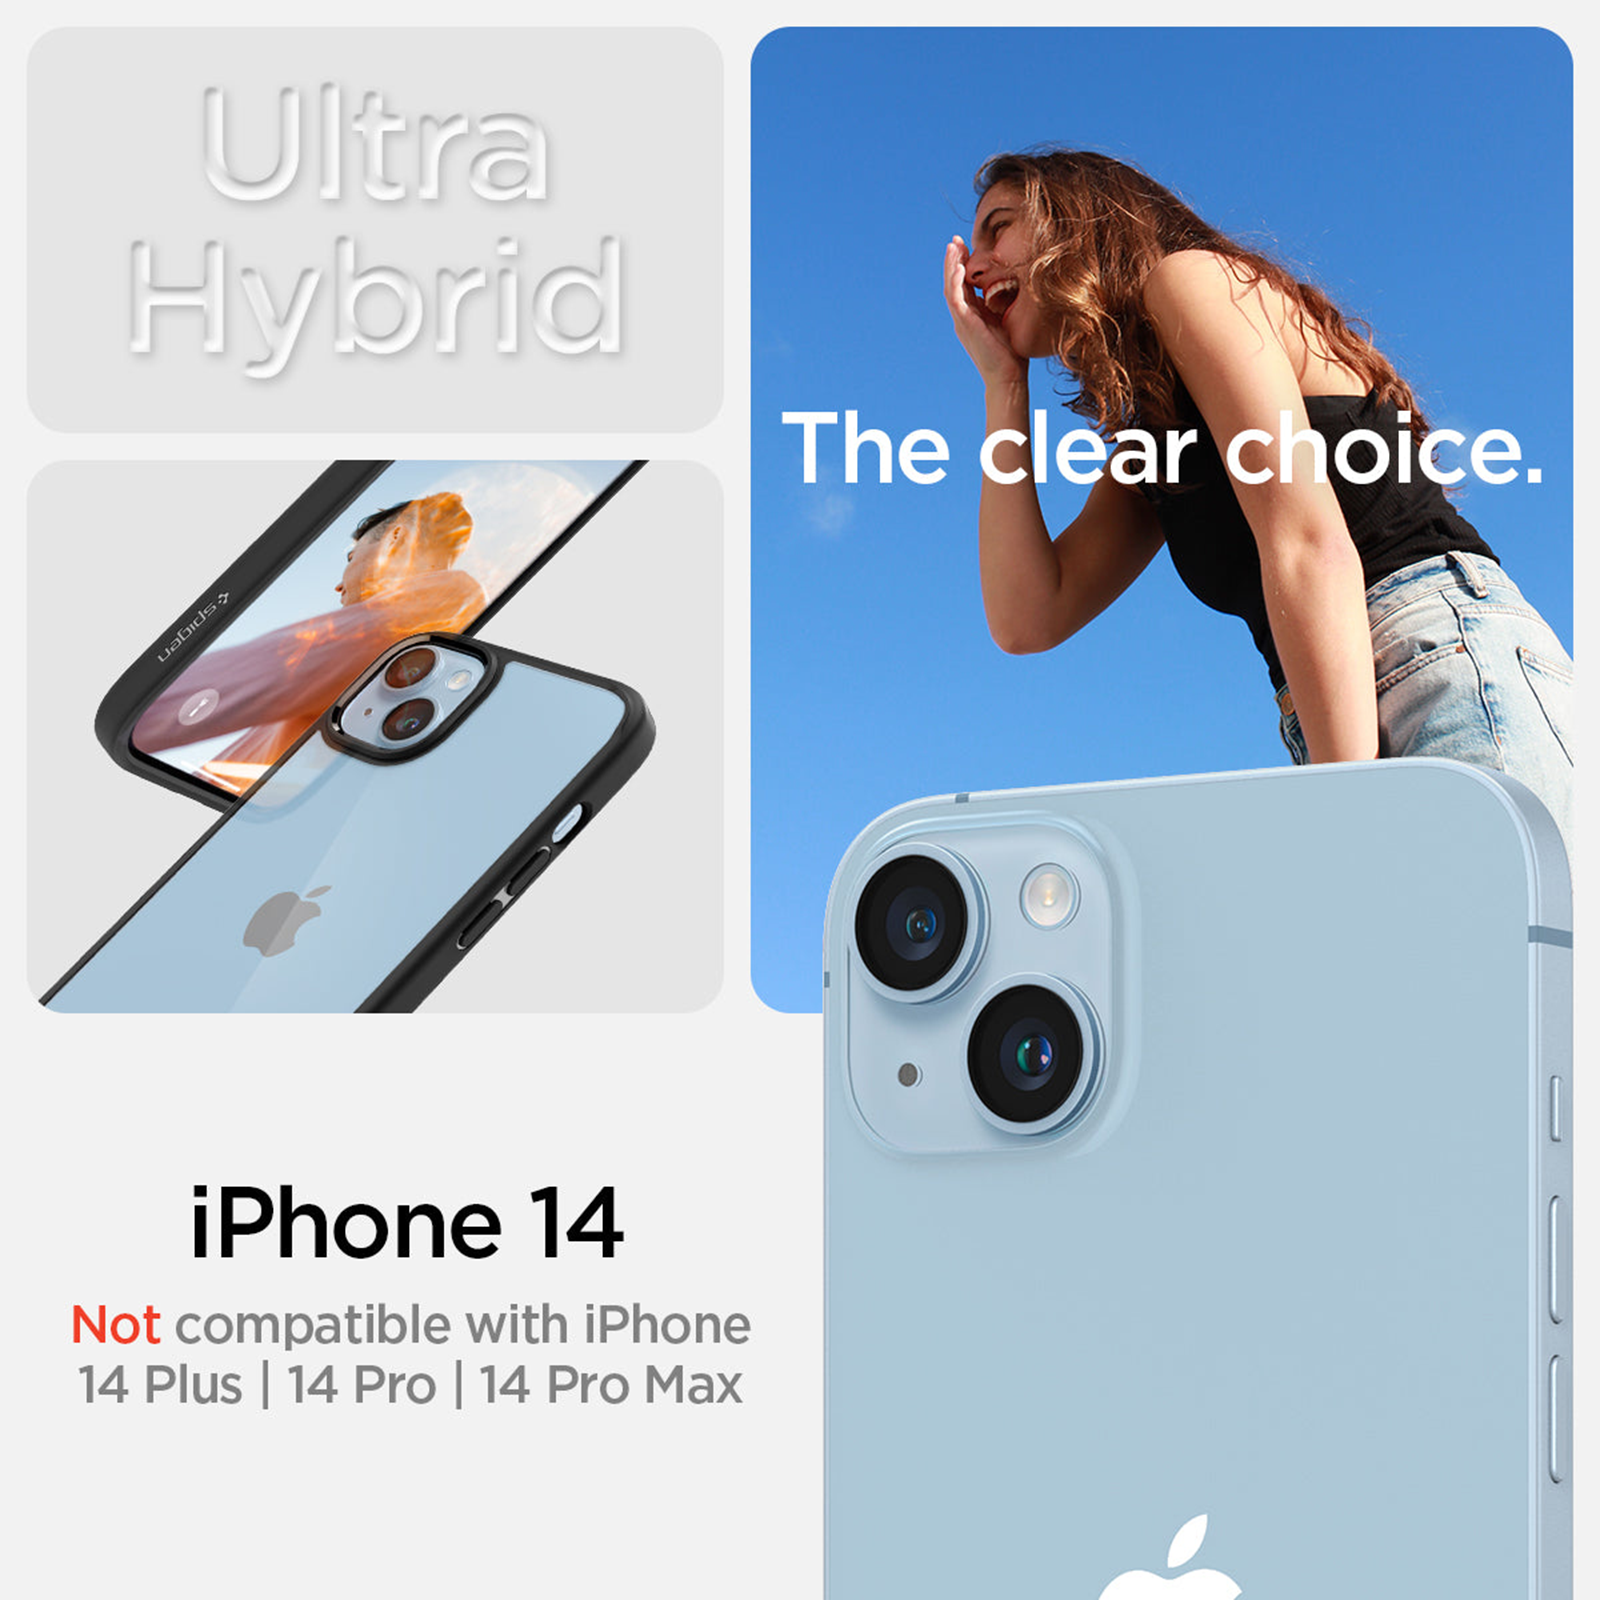 Spigen Ultra Hybrid Back Cover Case for iPhone 14 Pro (TPU + Poly  Carbonate, Matte Black)